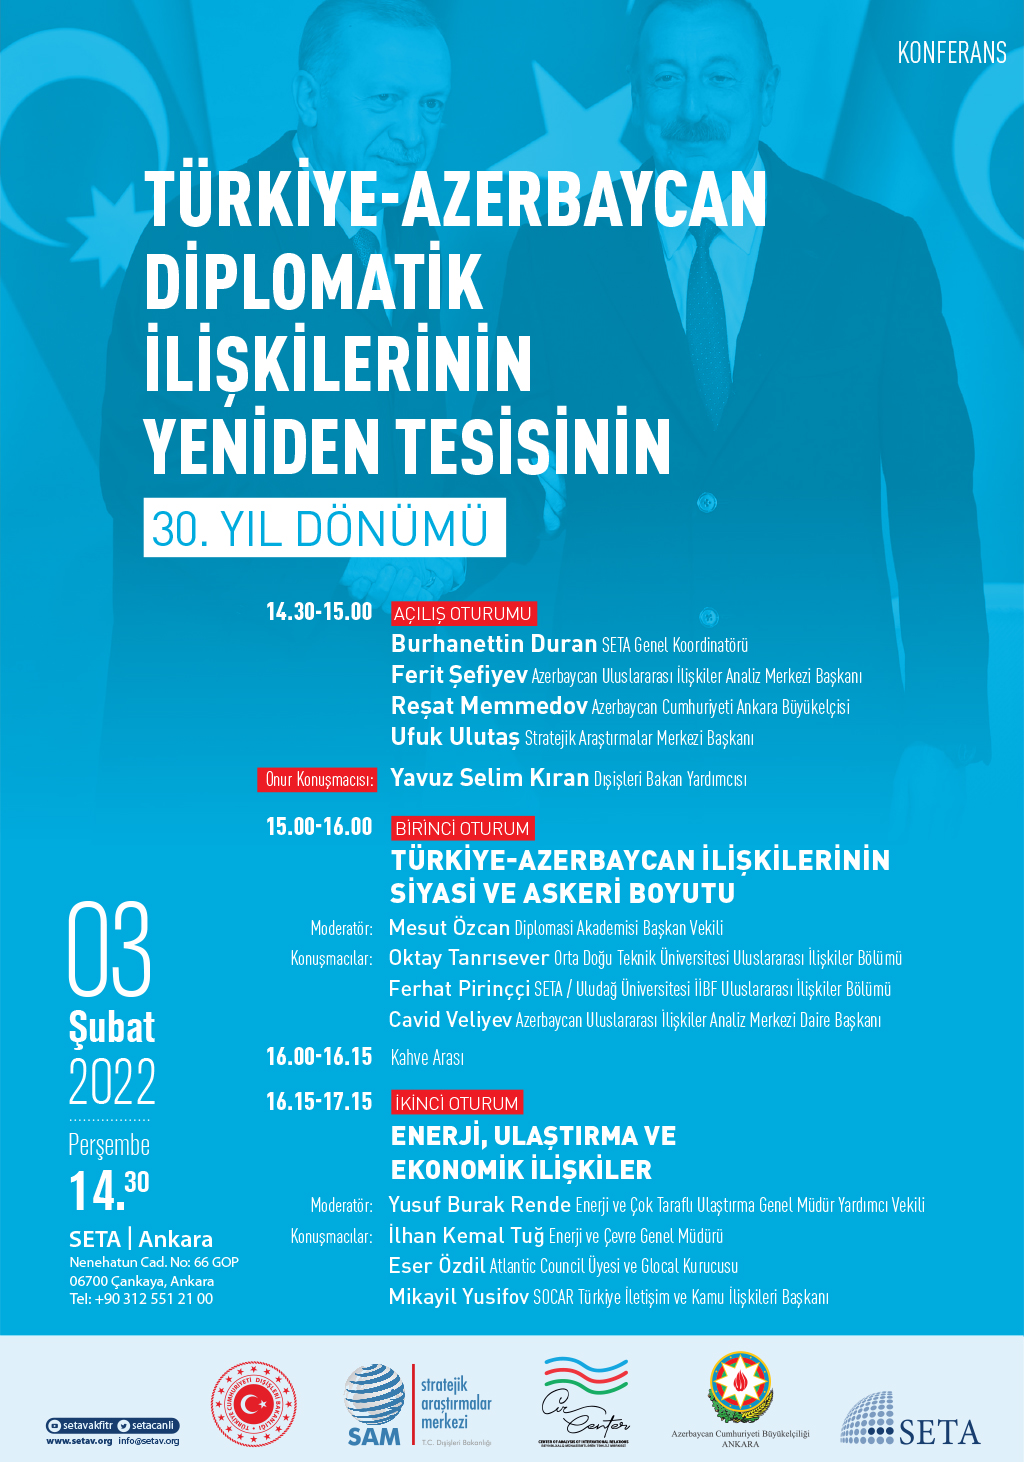 Konferans: Türkiye-Azerbaycan Diplomatik İlişkilerinin Yeniden Tesisinin 30. Yıl Dönümü